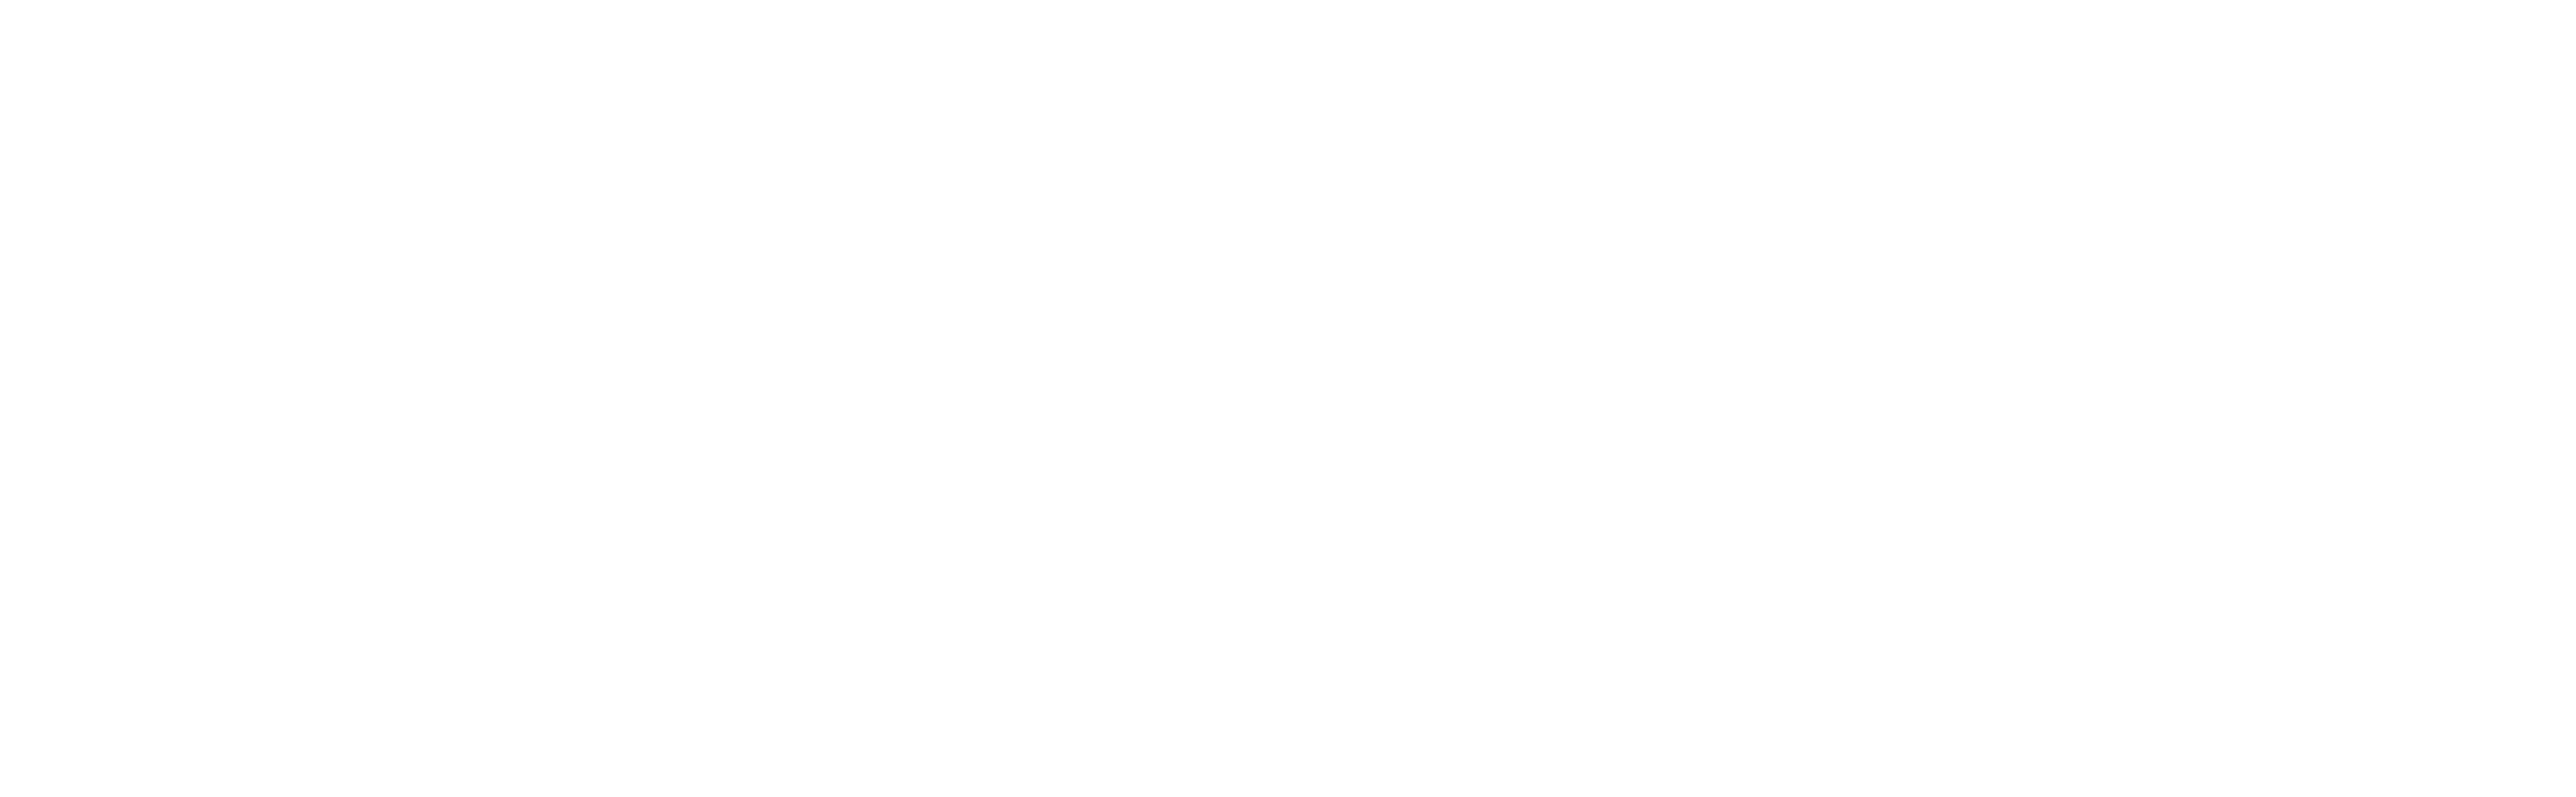 kawika athlete management